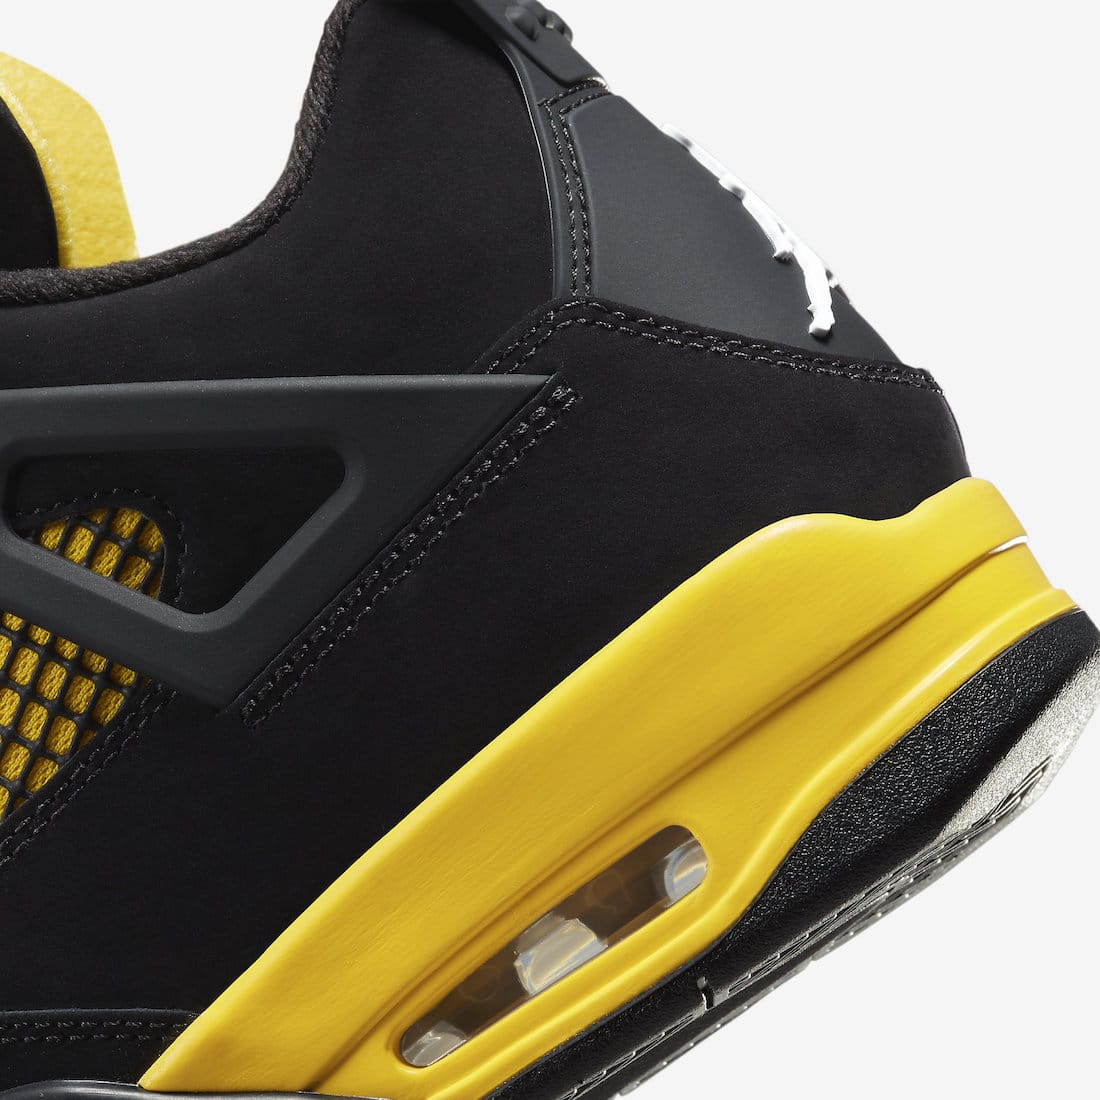 Les Jordan 4 Retro "Yellow Thunder" : Une paire iconique remise au goût du jour